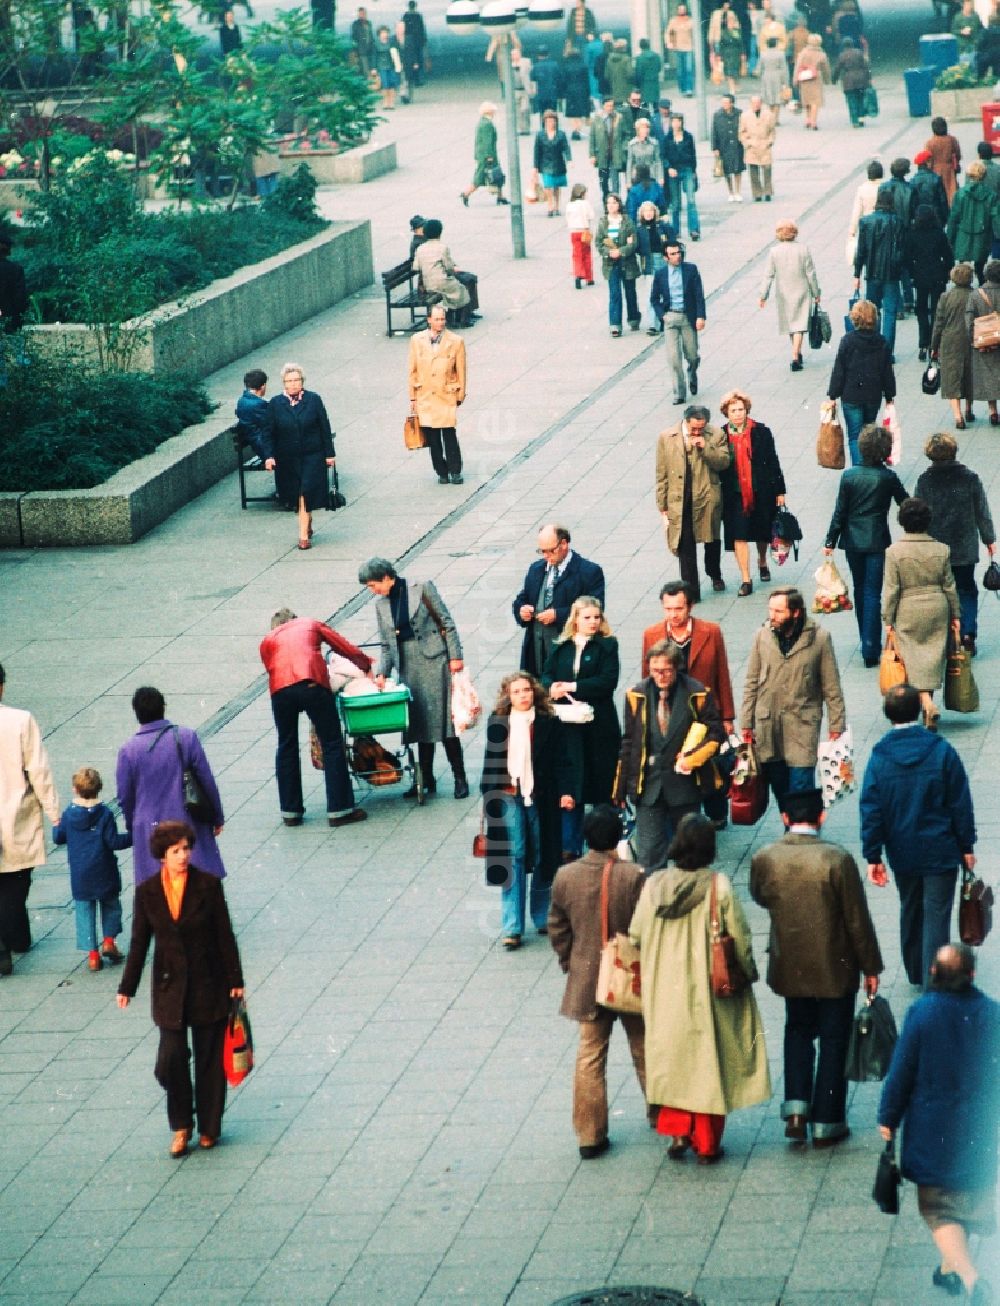 DDR-Fotoarchiv: Berlin - Menschen auf der Rathauspassage, Alexpassage am Alexanderplatz in Berlin